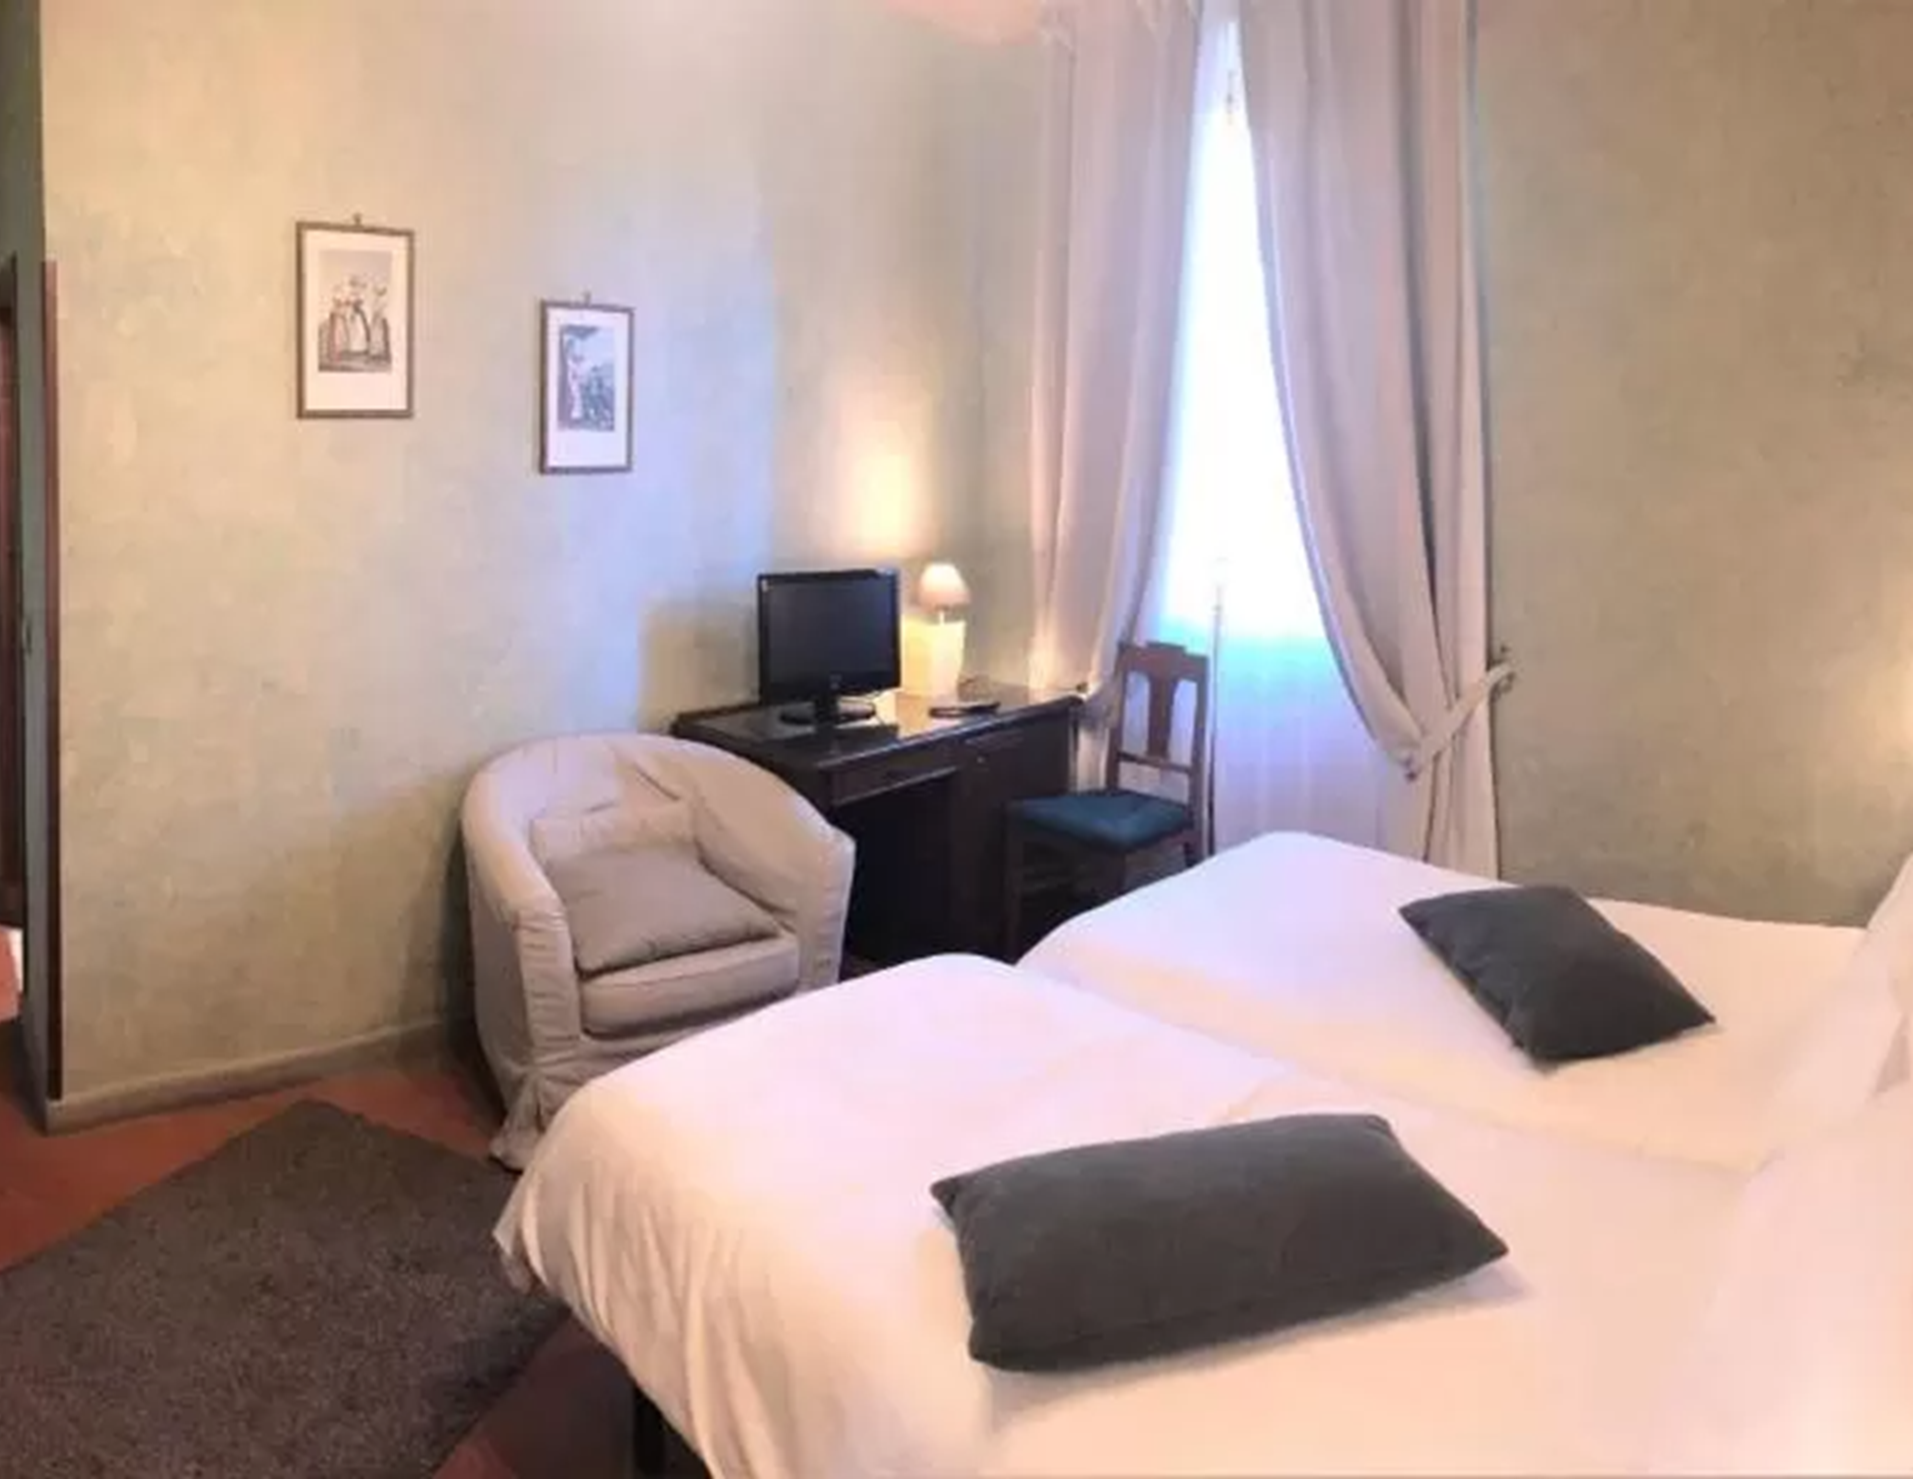 Hotel Bellavista - Room 9